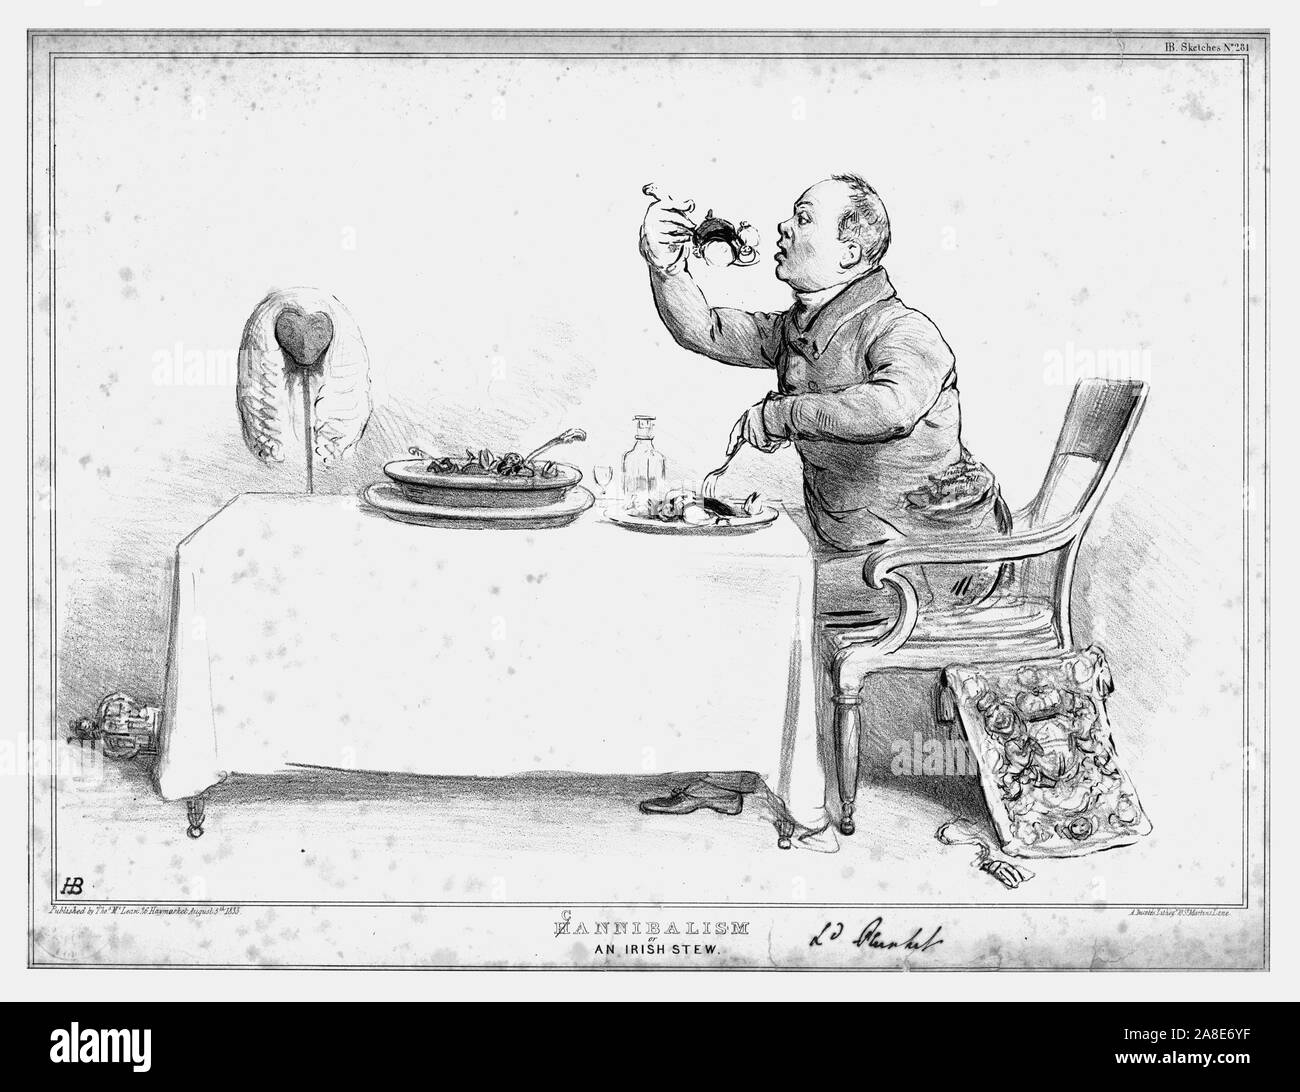 'H/Kannibalismus, oder ein irischer Eintopf." 1833. Lordkanzler von Irland William Conyngham Plunket isst ein Eintopf, die Leichen zu enthalten. Satirische Karikatur auf die britische Politik durch "H.B." (John Doyle). [Thomas McLean, London, 1833] Stockfoto